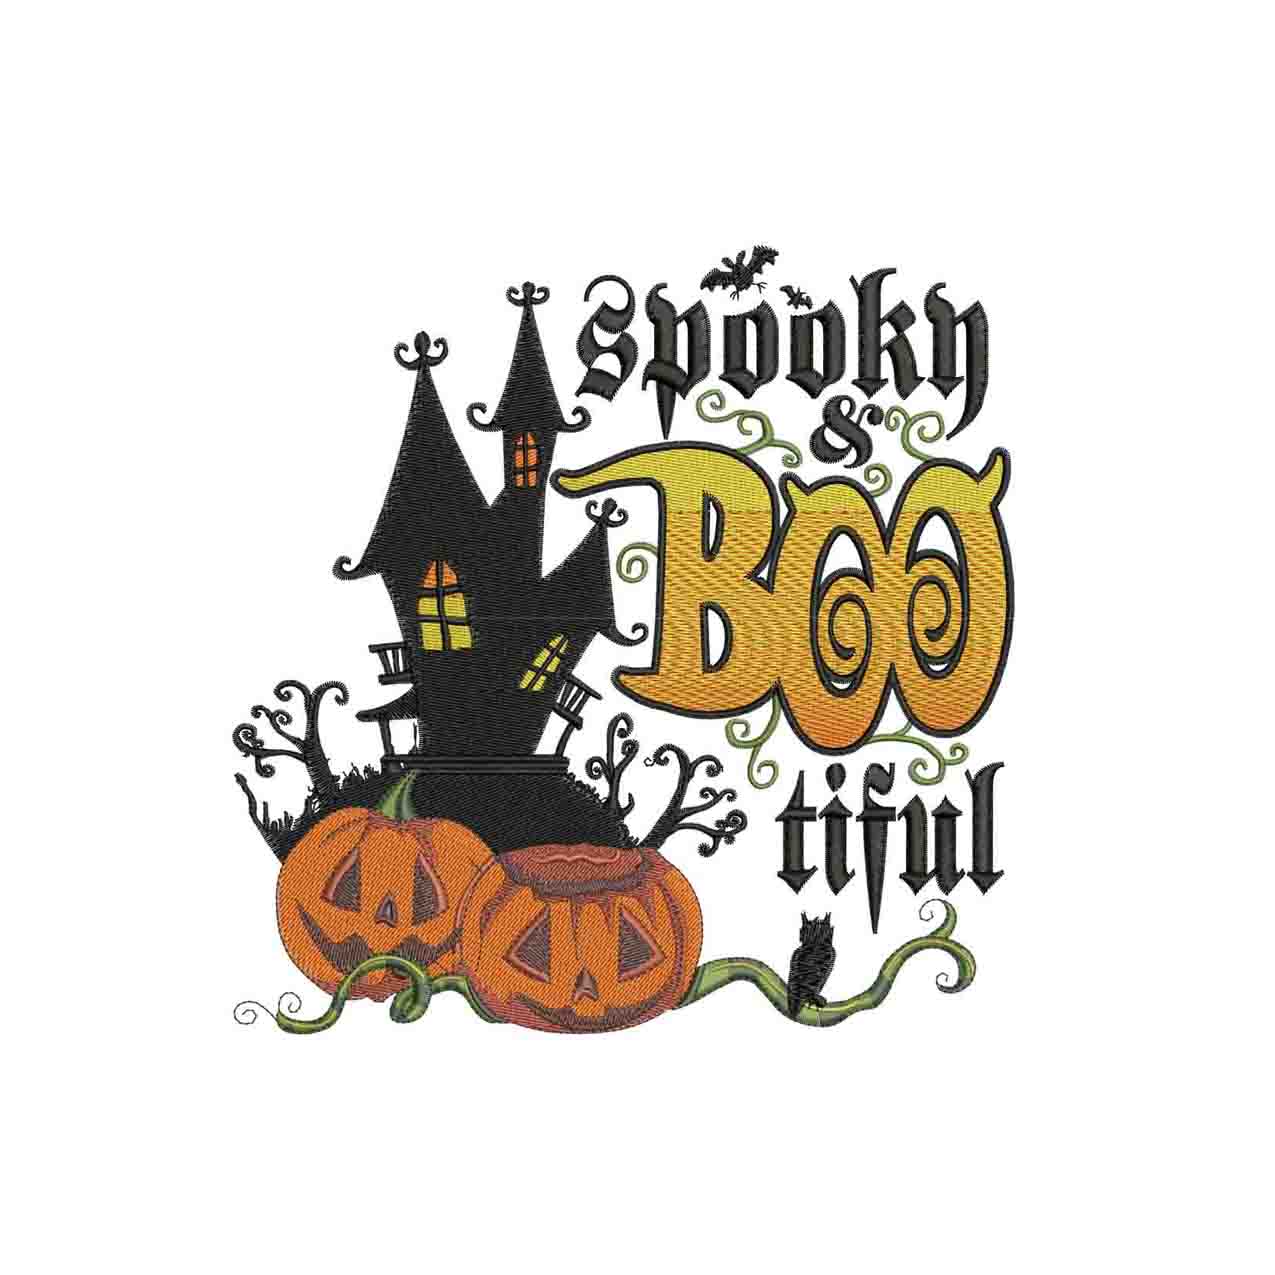 Spooky Boo tiful